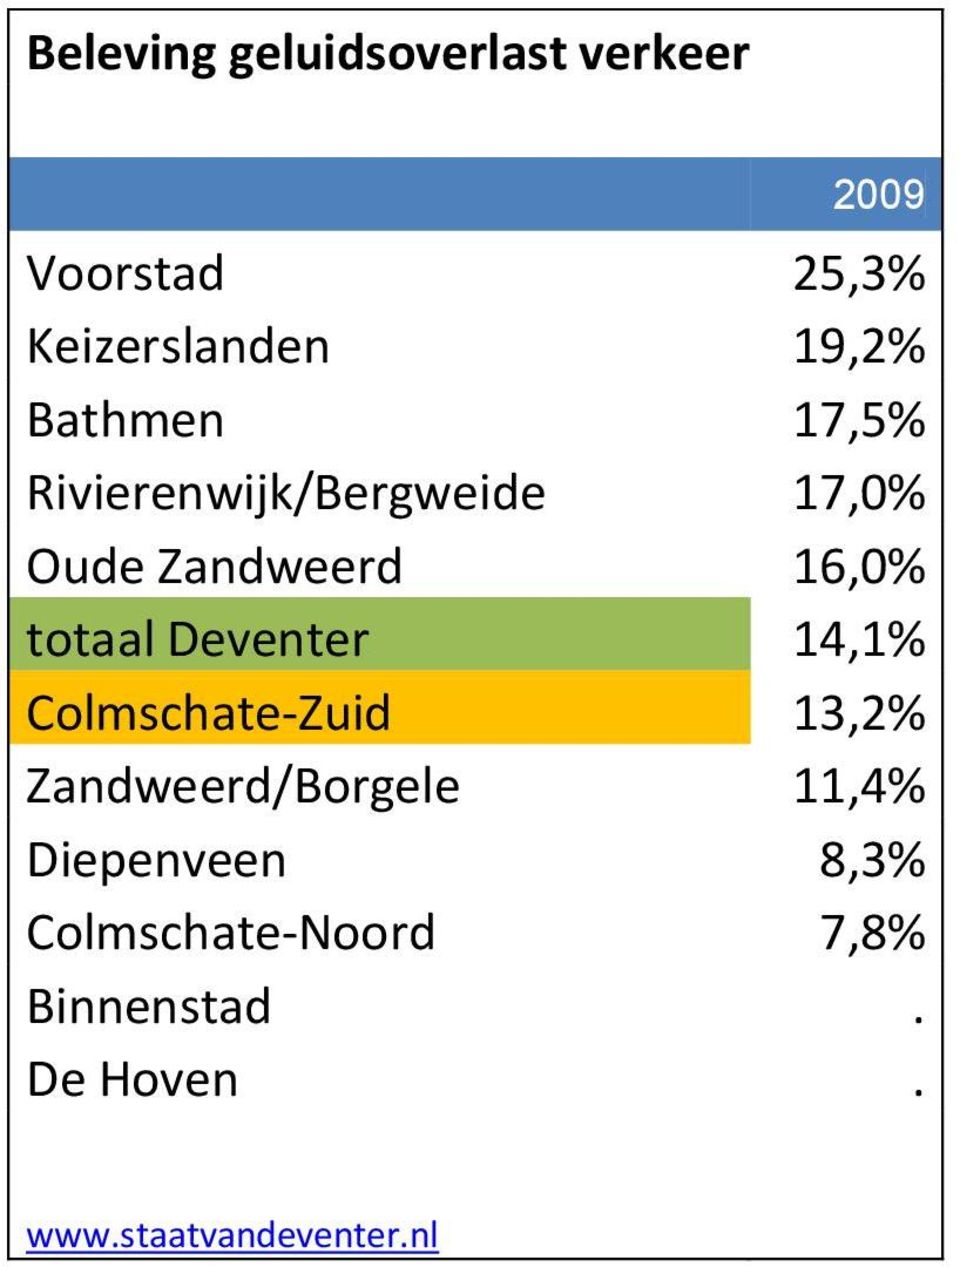 Deventer 14,1% Colmschate-Zuid 13,2% Zandweerd/Borgele 11,4%